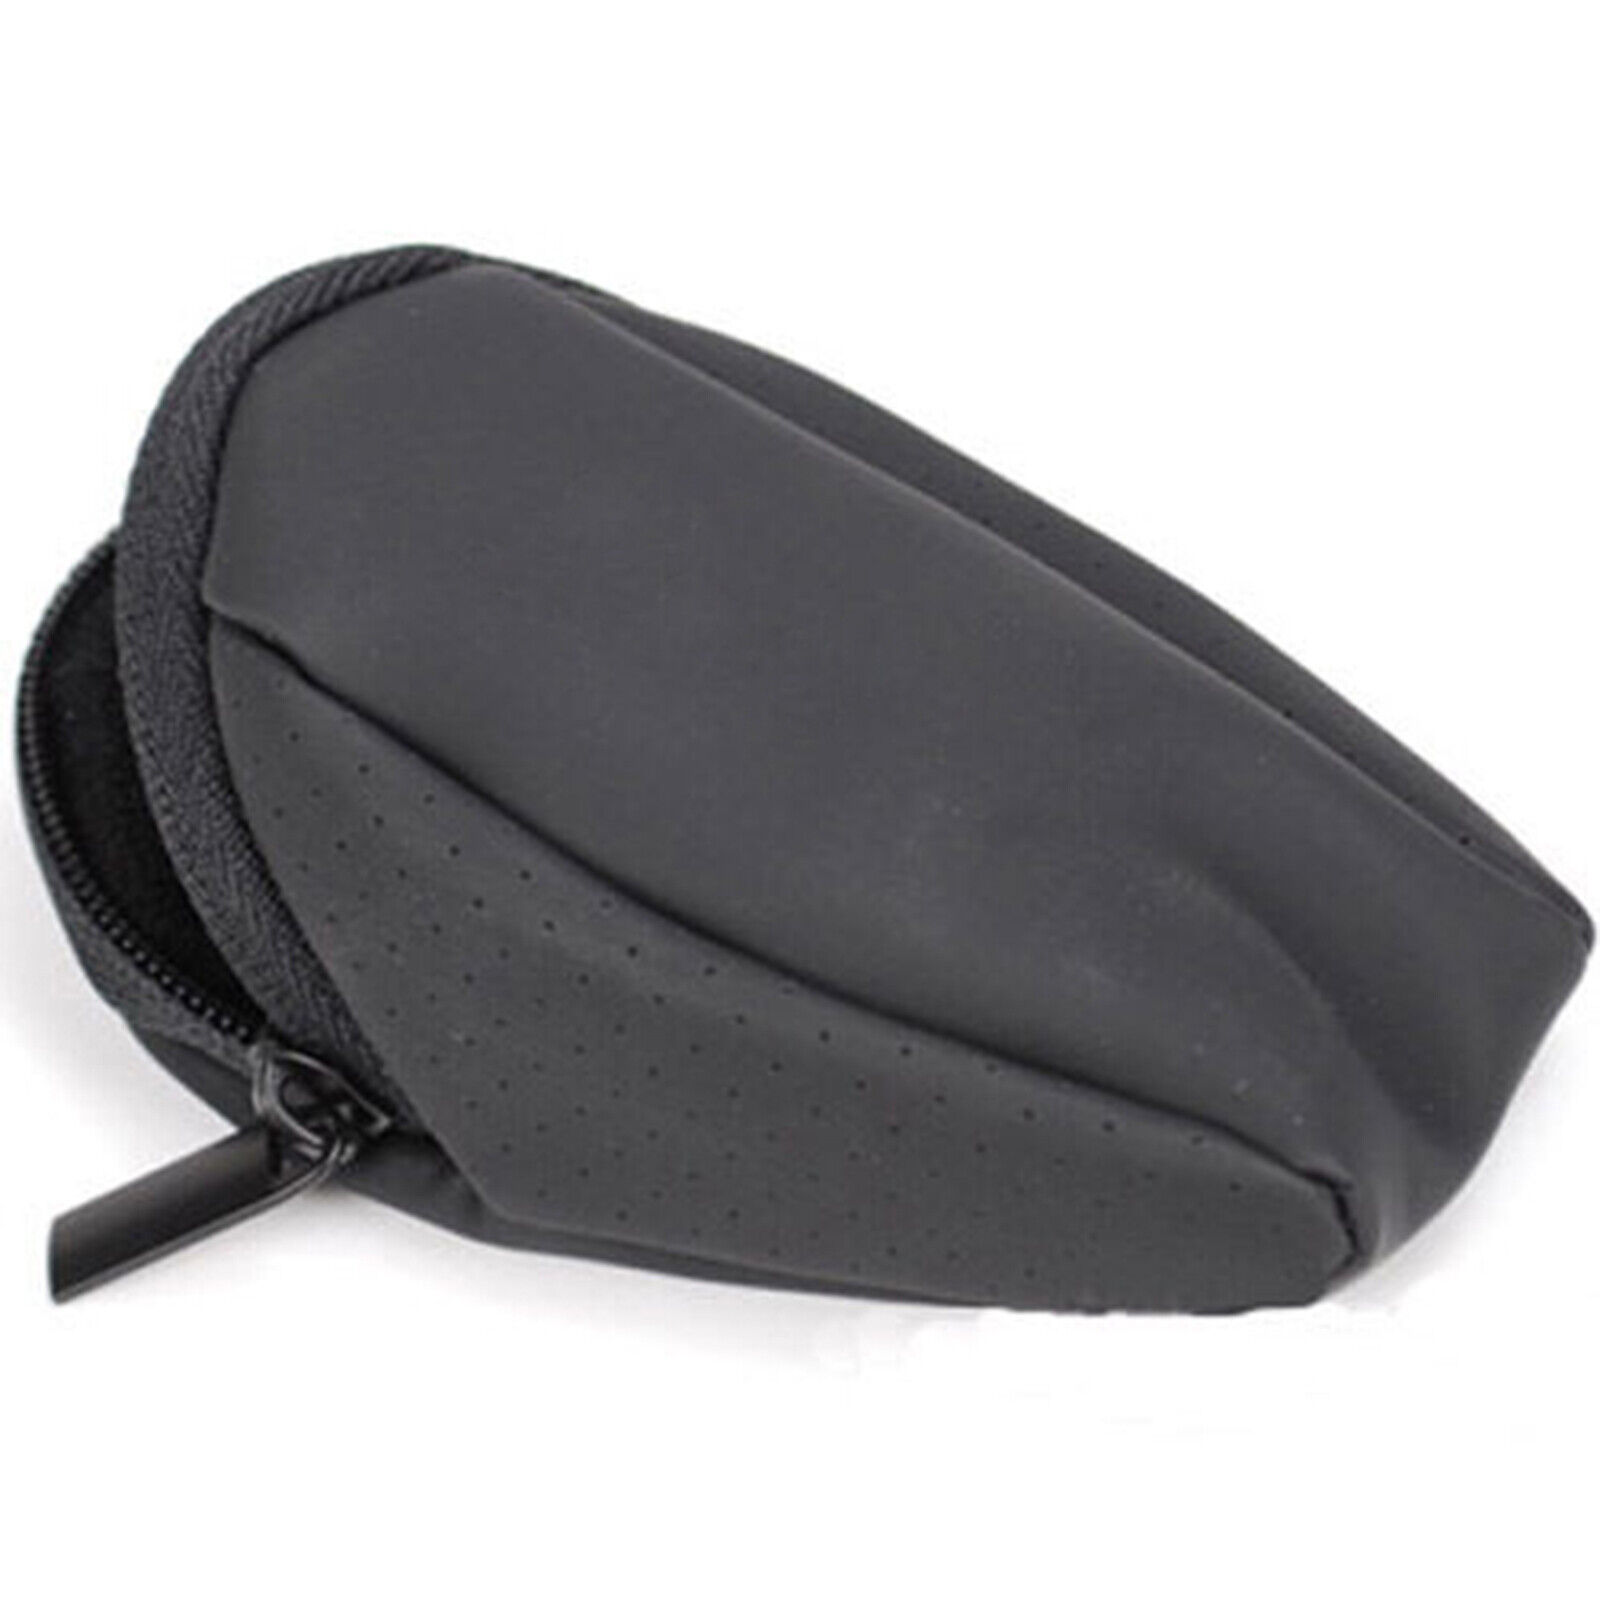 Mouse Bag Cover Zipper Pouch Fit for Logitech M905 M325 M235 M305 M215 V470 V550